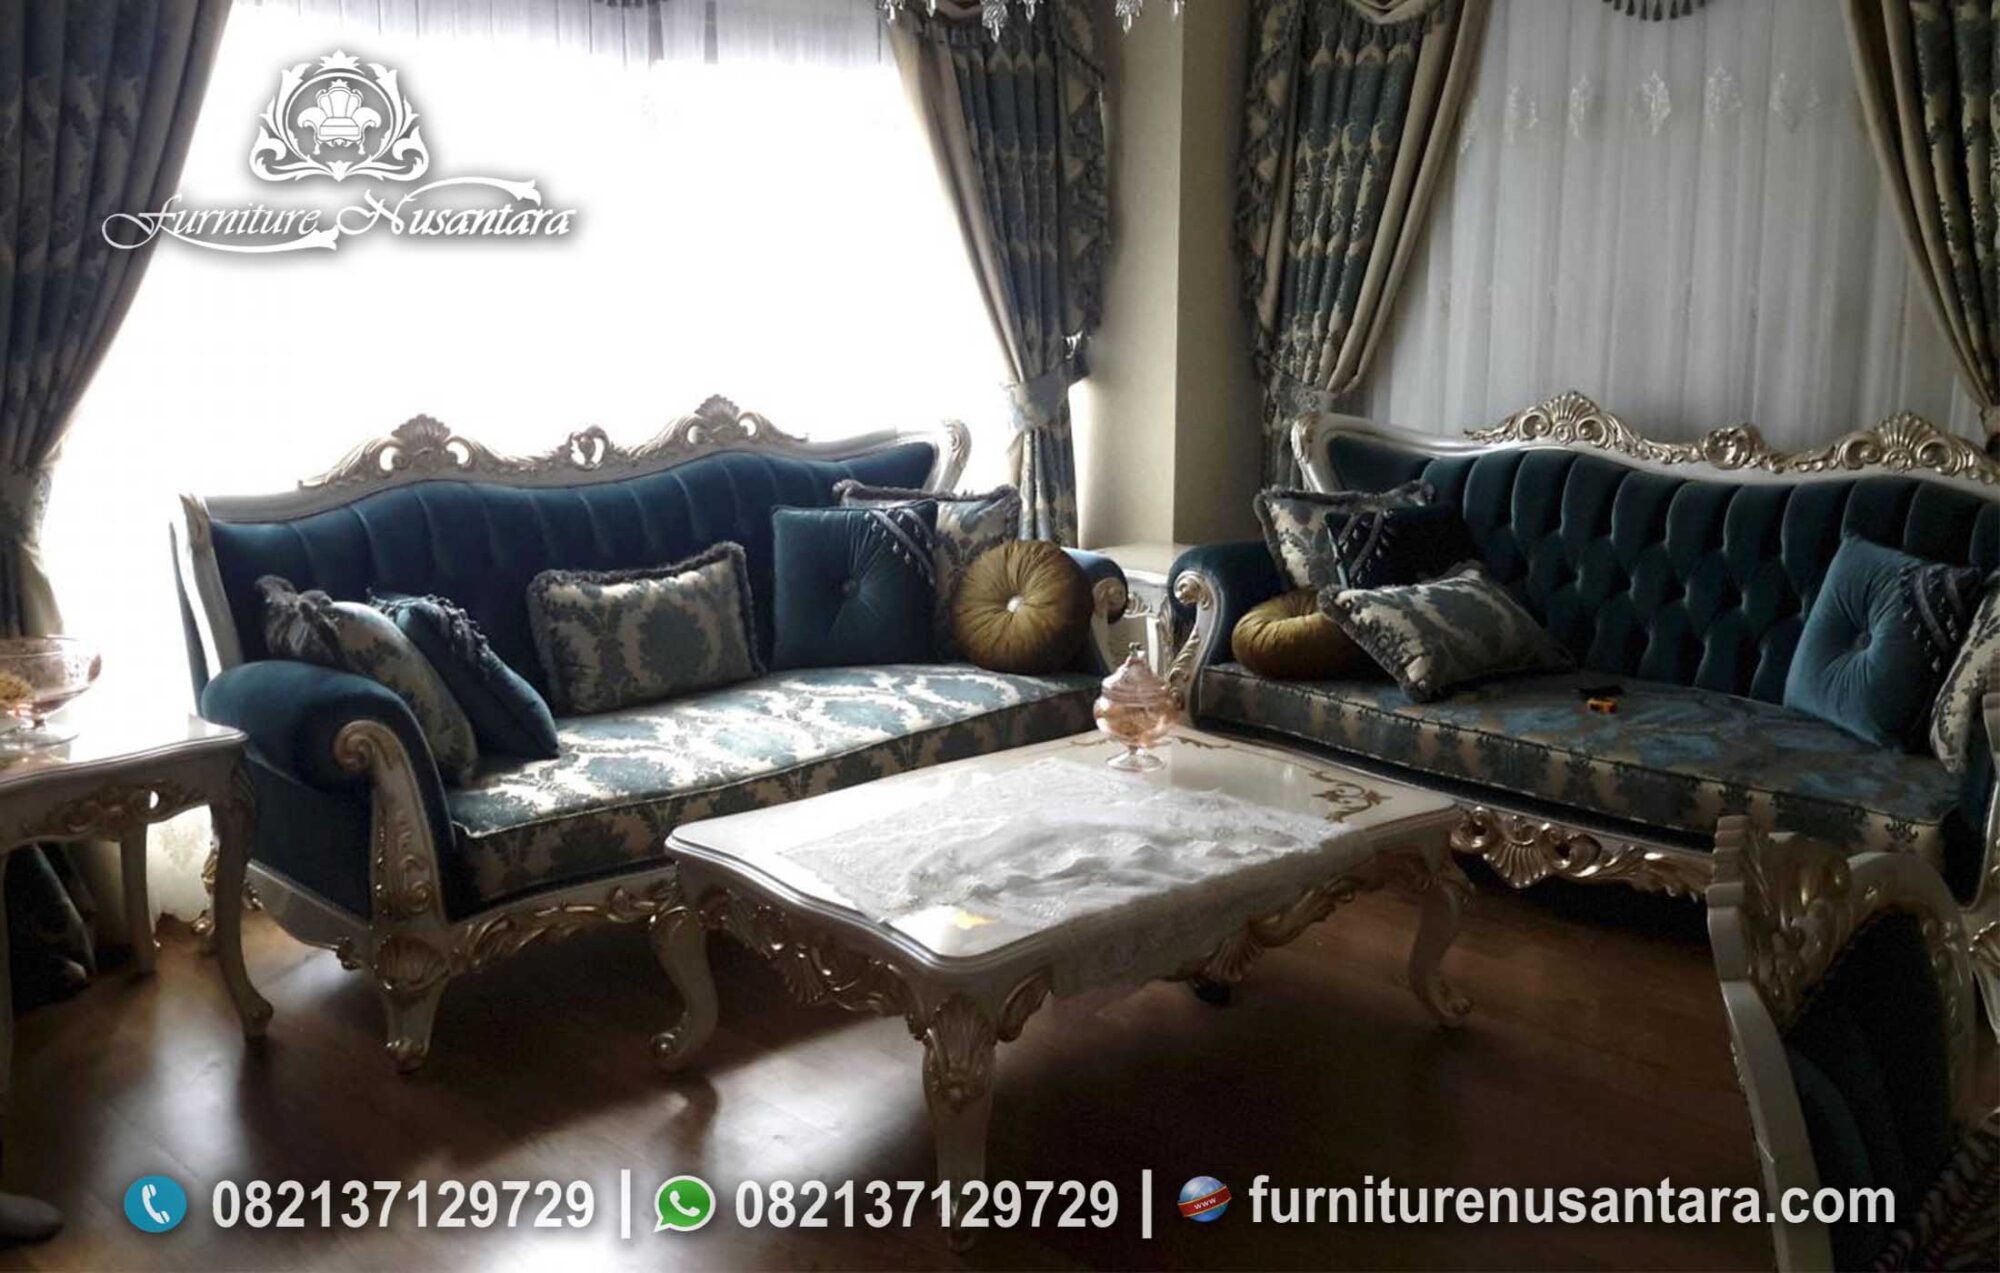 Desain Dan Model Sofa Ruang Tamu ST-16, Furniture Nusantara